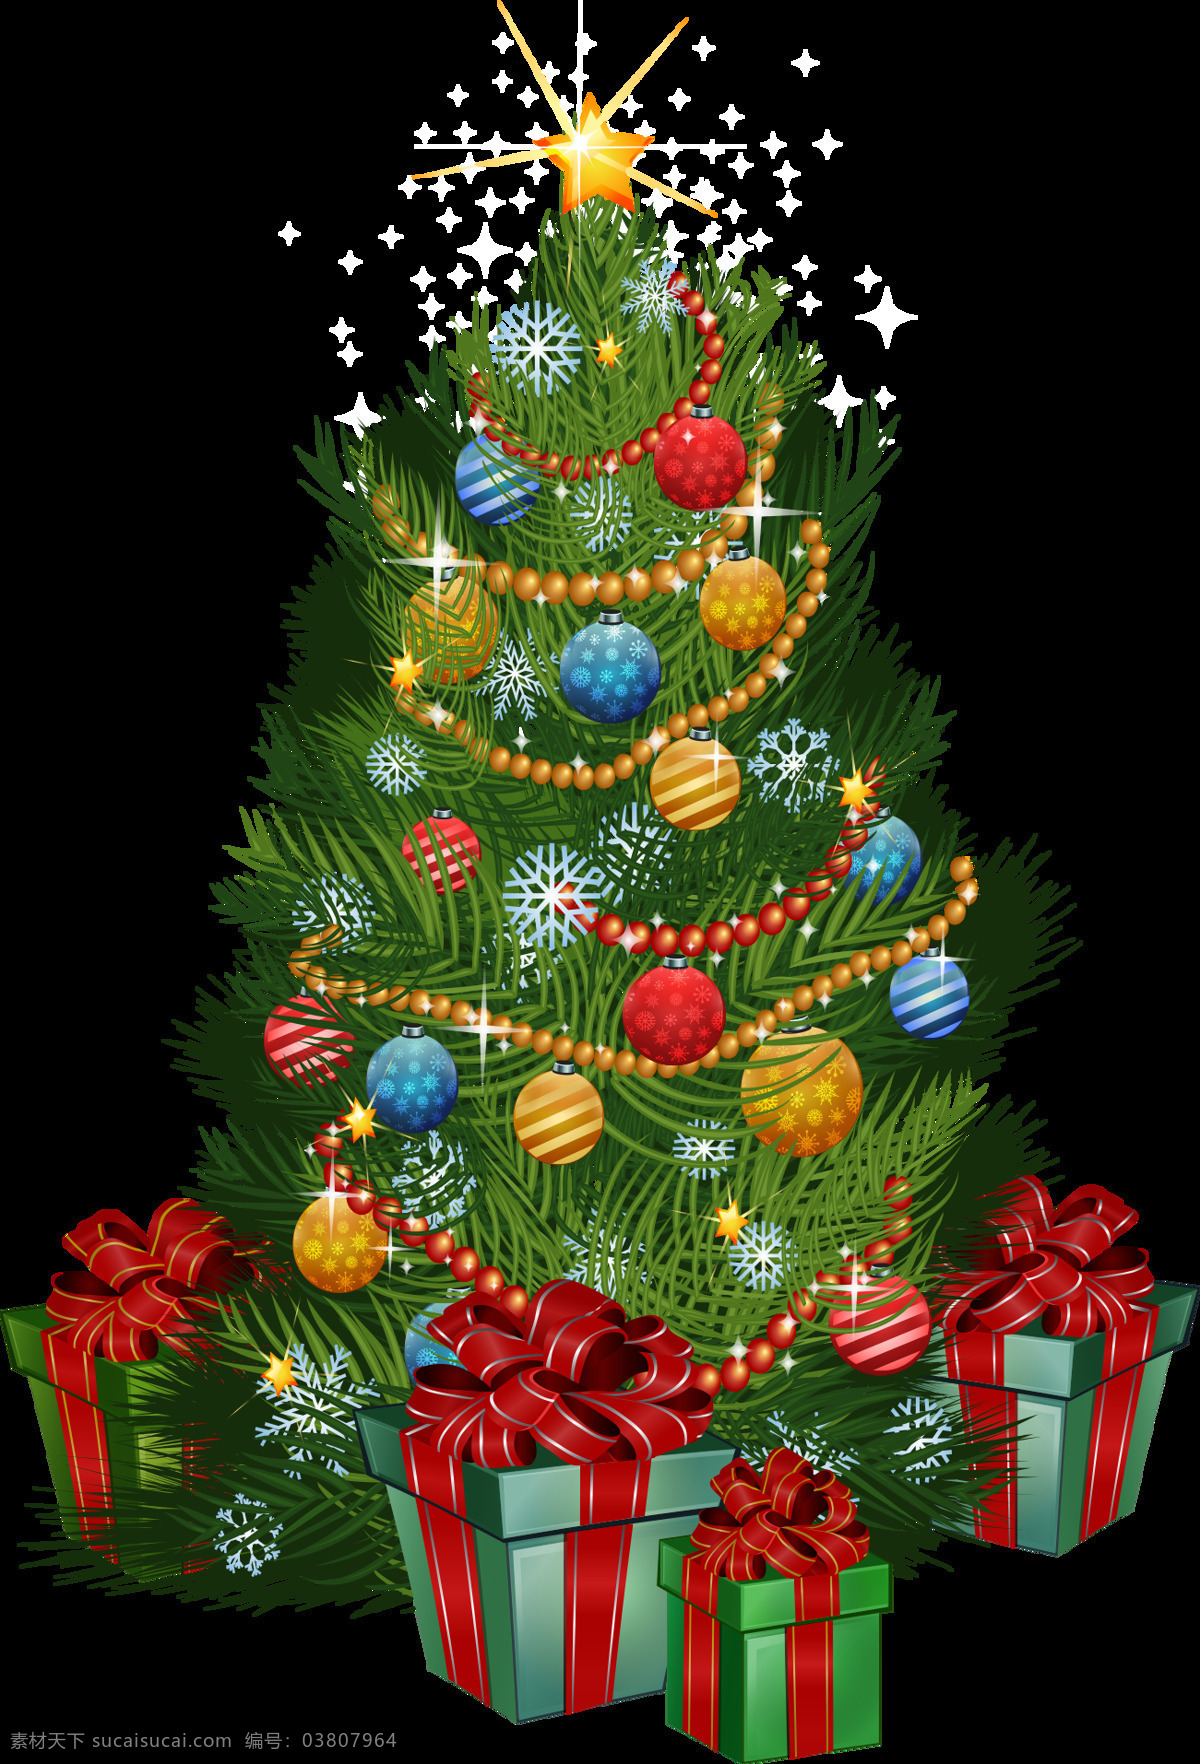 圣诞 礼物 圣诞树 元素 圣诞透明元素 设计素材 圣诞元素下载 铃铛 节日元素 圣诞装饰 圣诞松枝 圣诞帽 圣诞礼物 圣诞袜